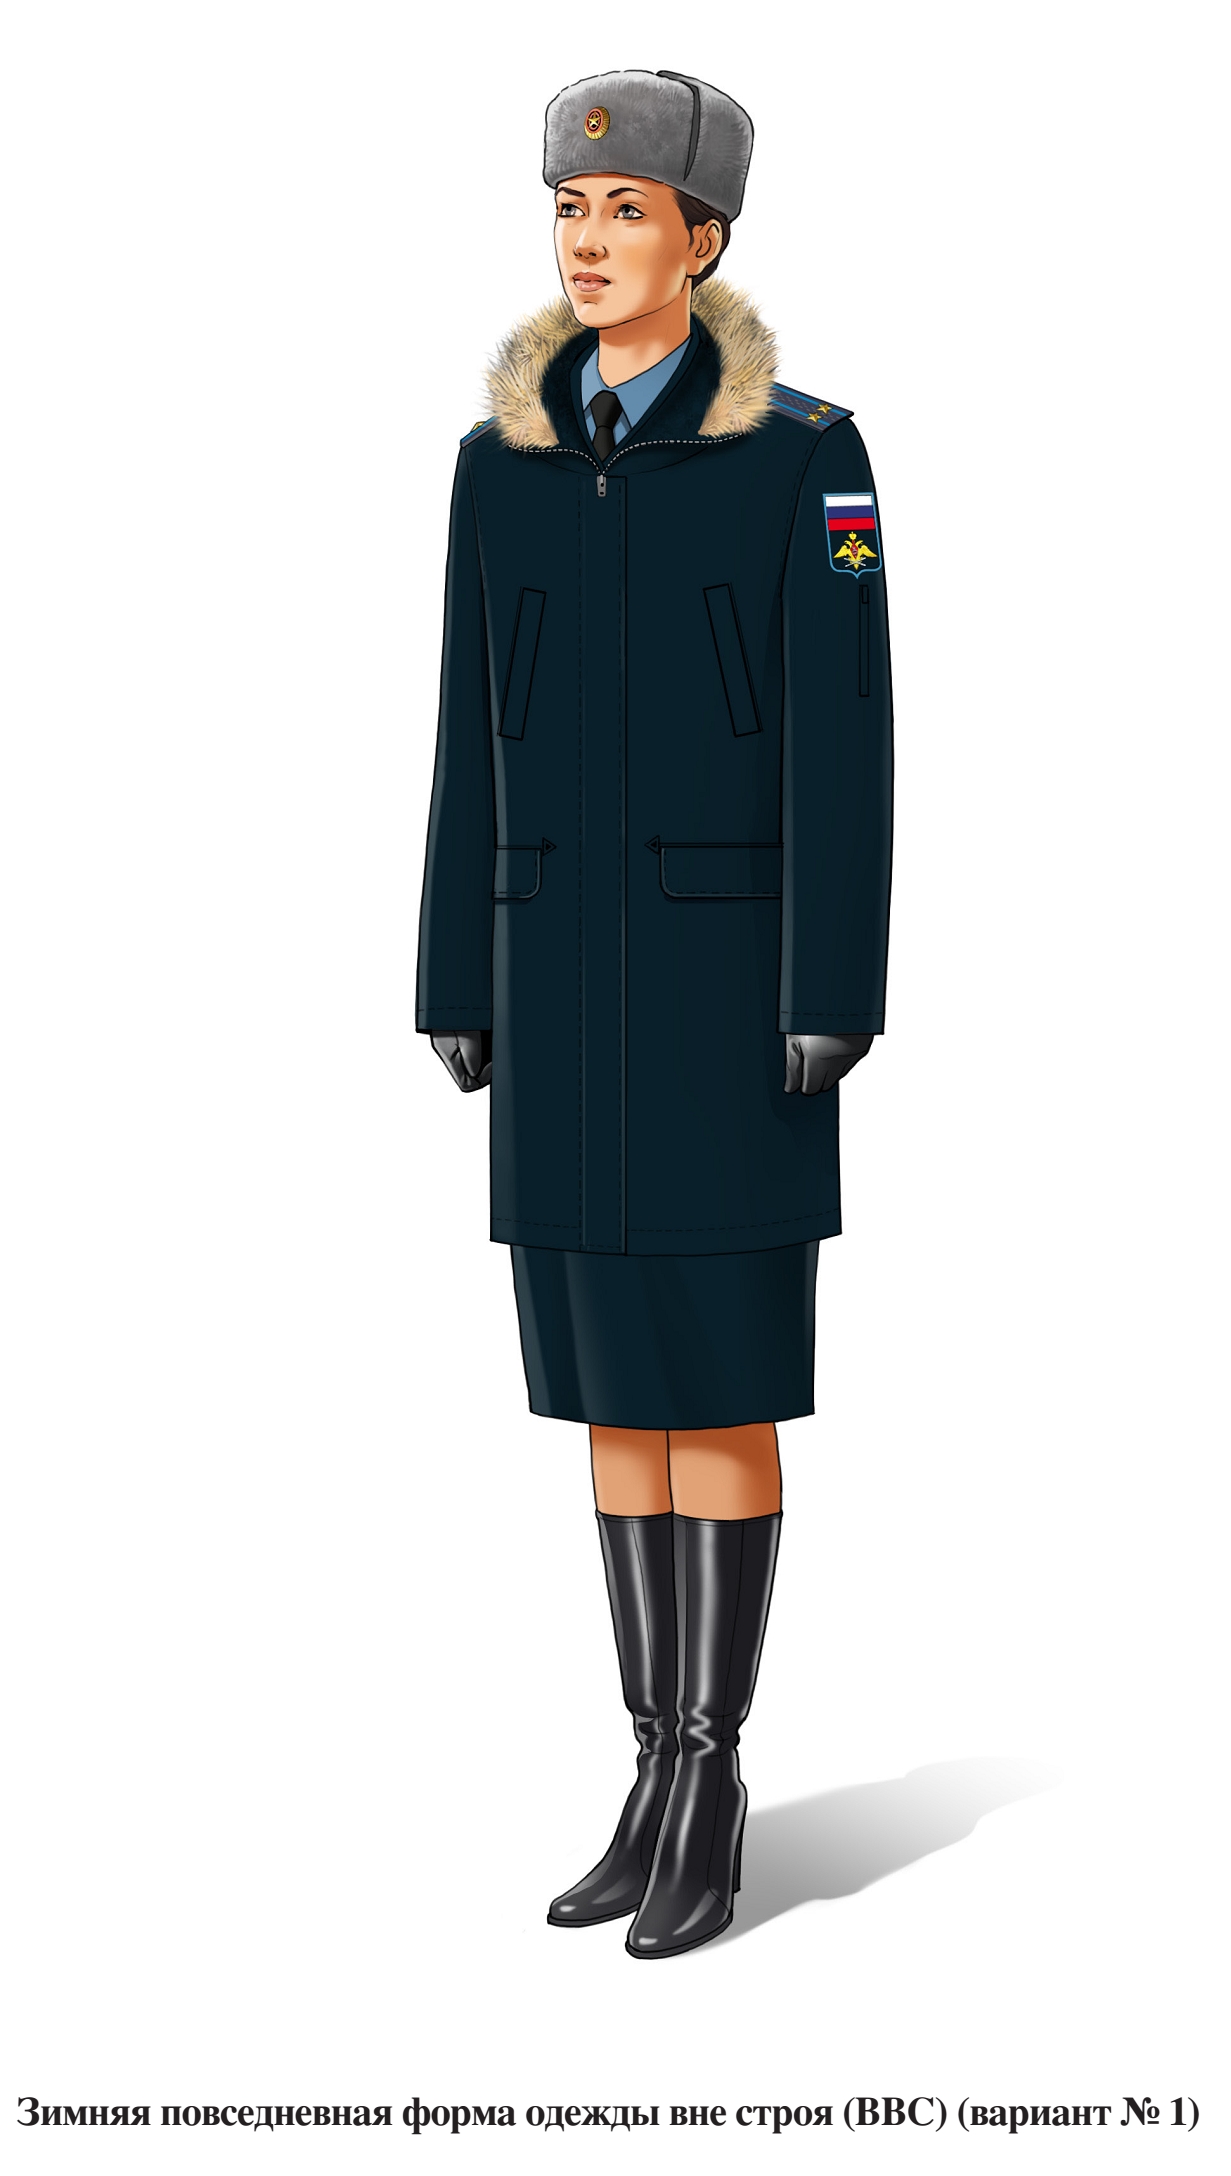 Зимняя повседневная форма военнослужащих женского пола ВВС и ВДВ